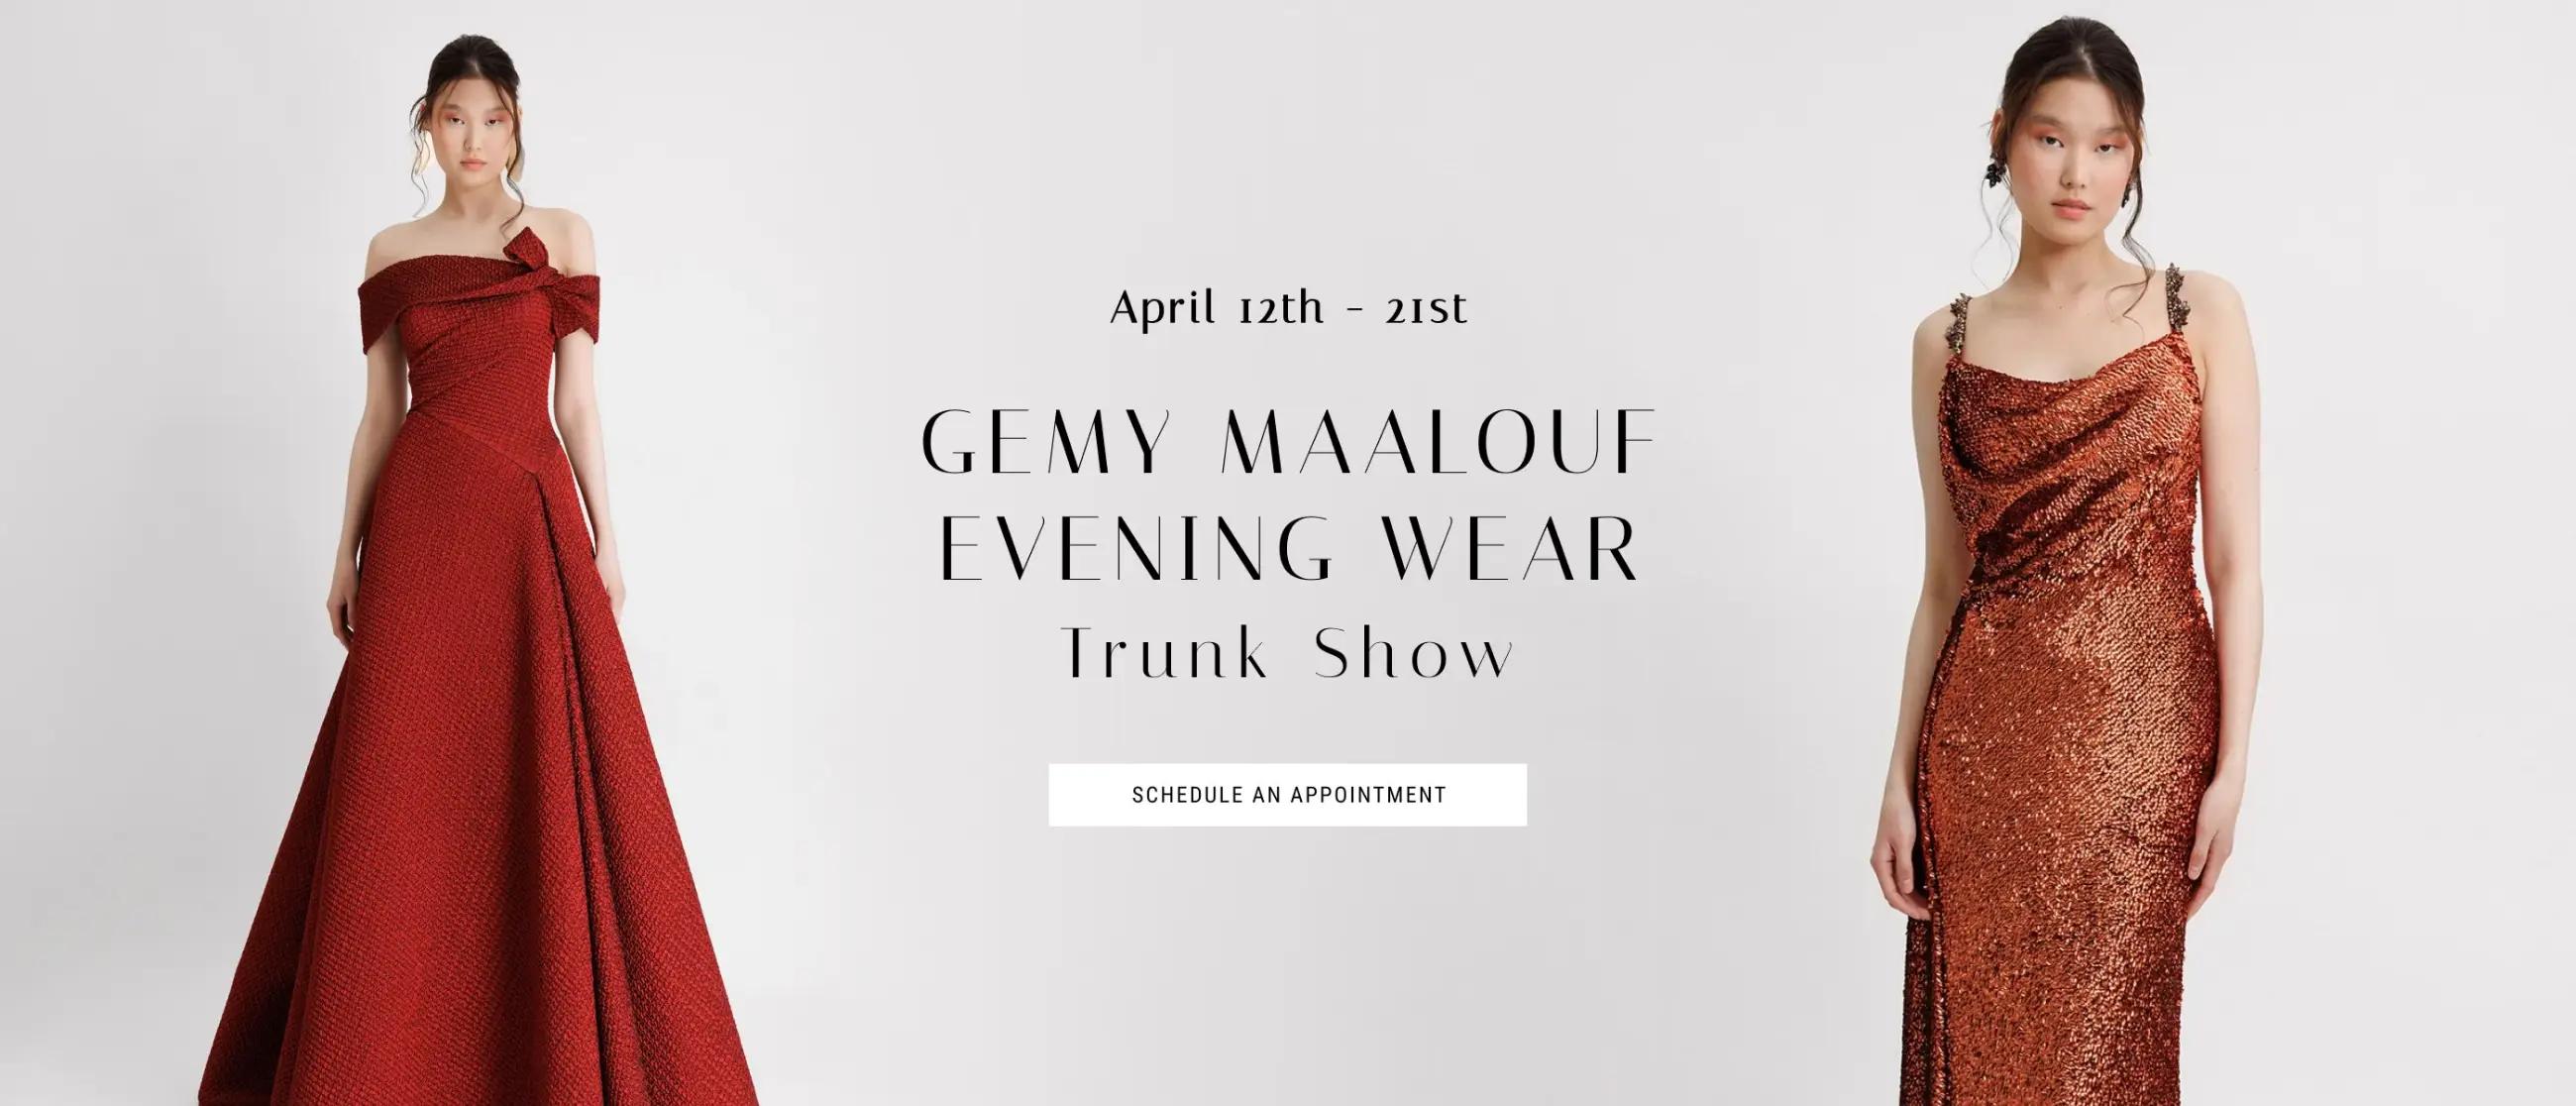 Gemy Maalouf Evening Wear Trunk Show Banner